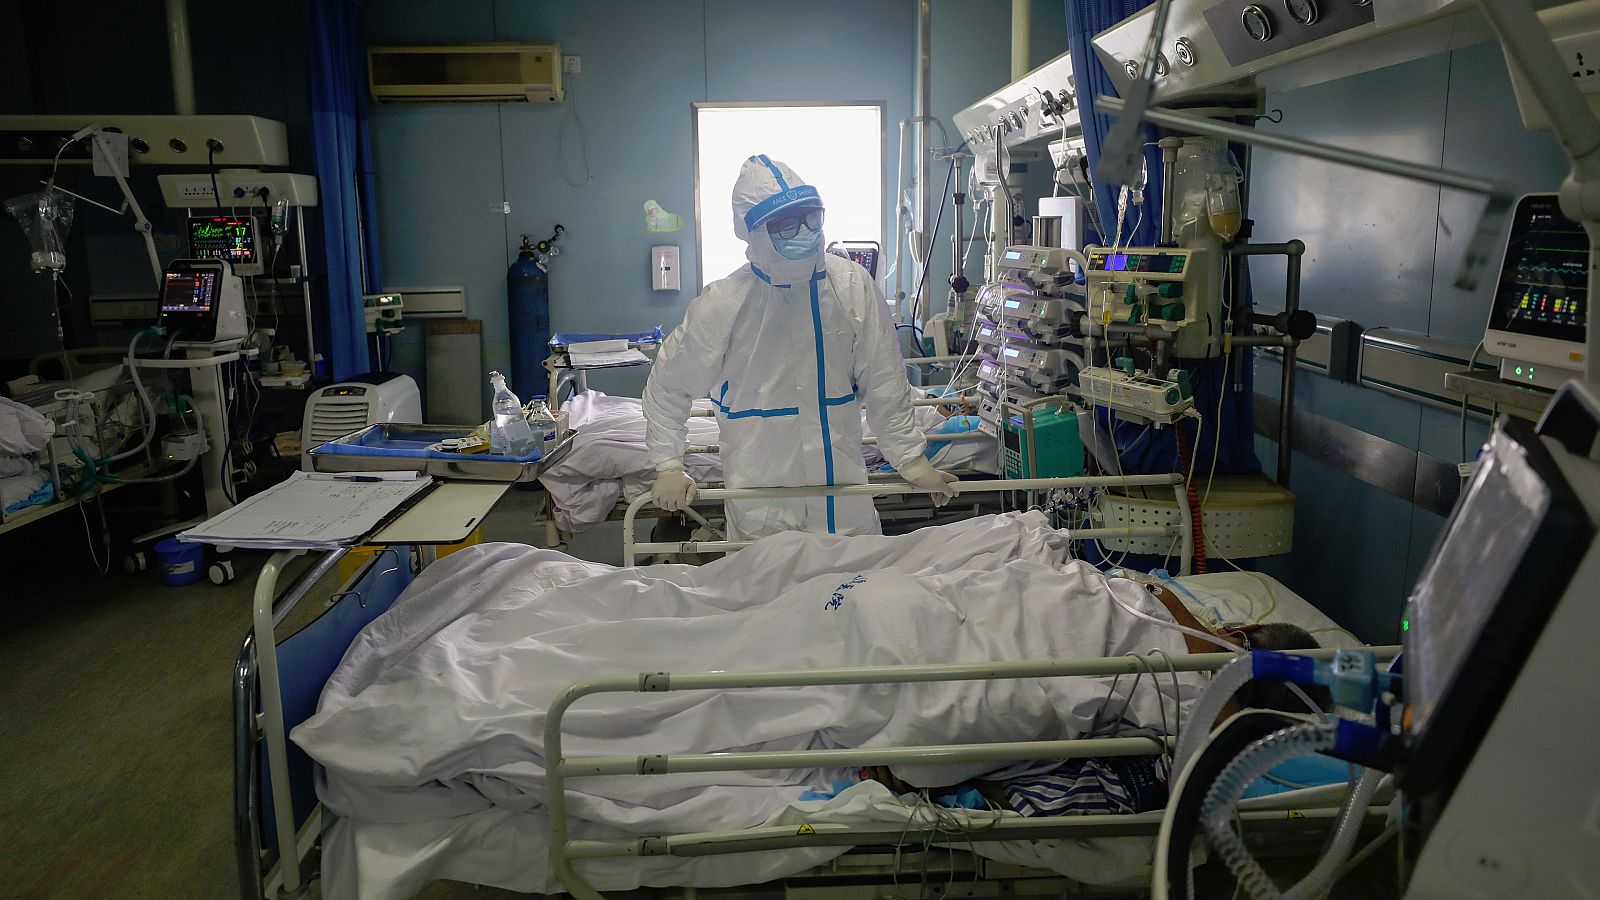 El Covid-19, el nuevo término con el que la OMS denomina al coronavirus, sigue dejando víctimas en China, país que registra el mayor número de fallecimientos y de contagios. En concreto, la Comisión Nacional de Salud eleva la cifra de muertes a 1.367